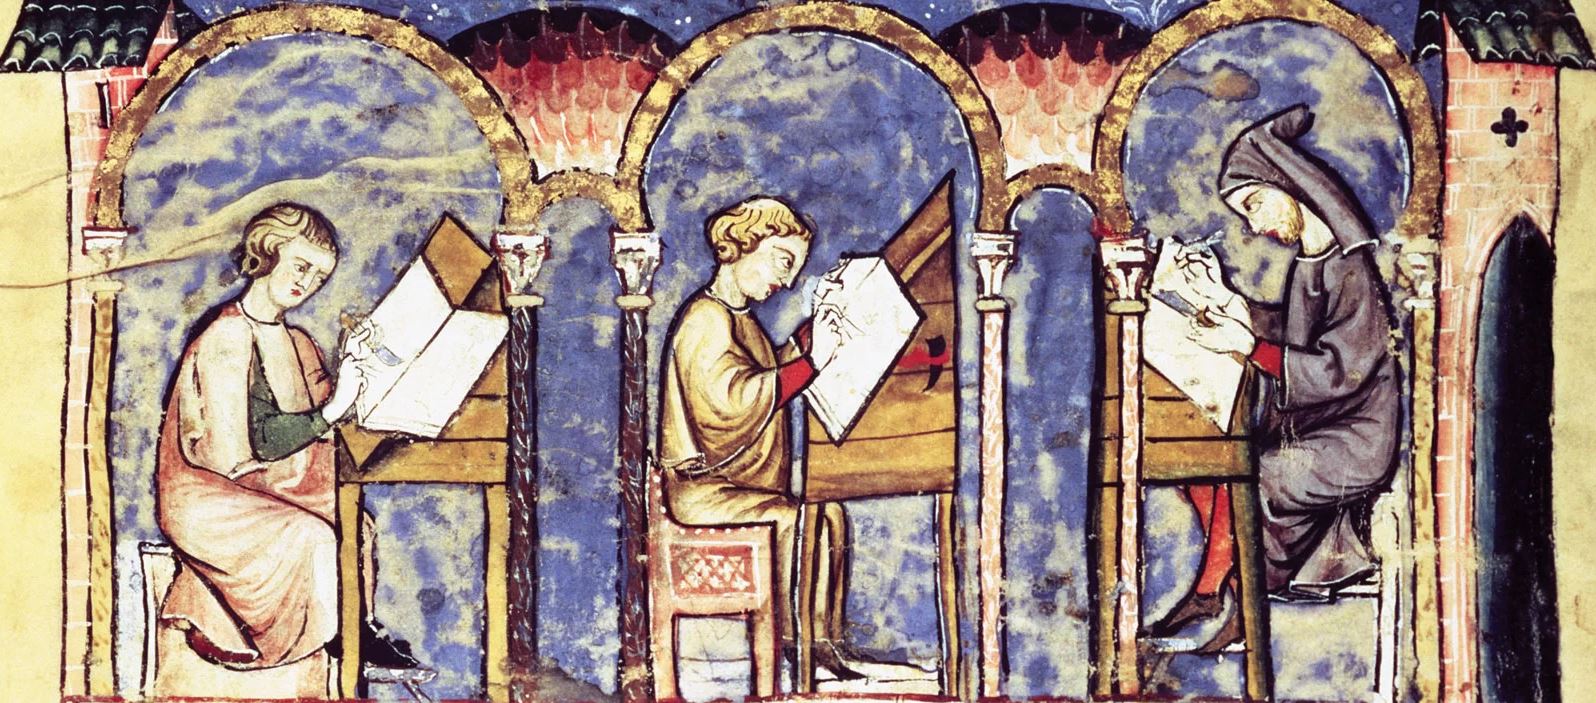 Moines copistes travaillant dans un scriptorium. Enluminure extraite du Livre des jeux, traité du XIIIe siècle réalisé pour Alphonse X de Castille